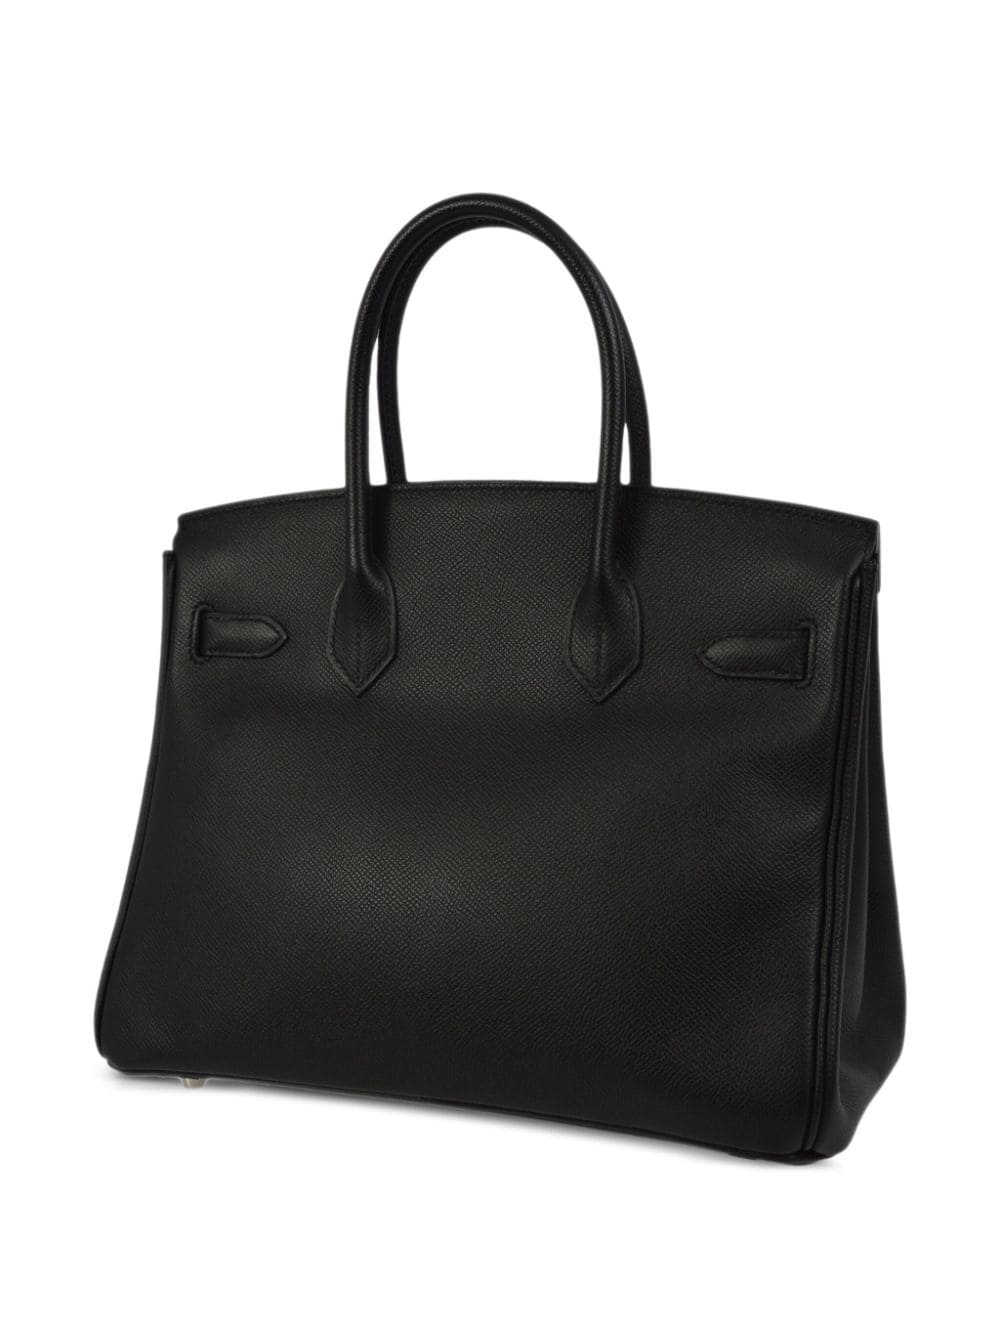 Hermès Pre-Owned 2010 Birkin 30 handbag - Zwart